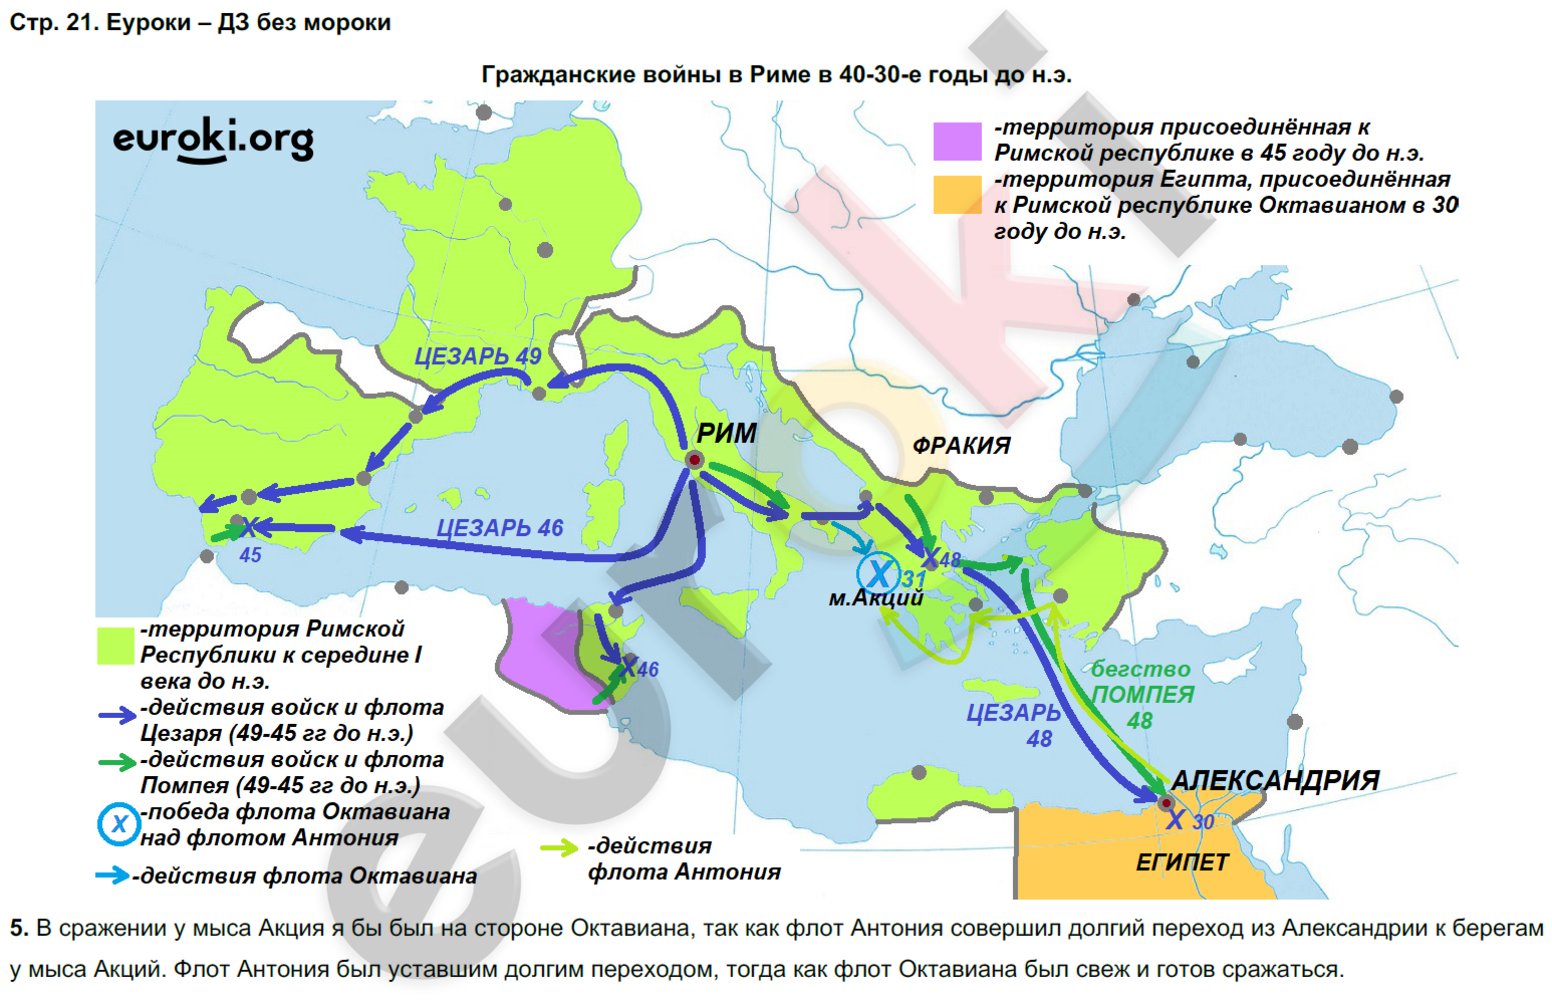 Контурная карта по истории 5 курбский. Карта по истории 5 класс рост Римского государства контурная карта.